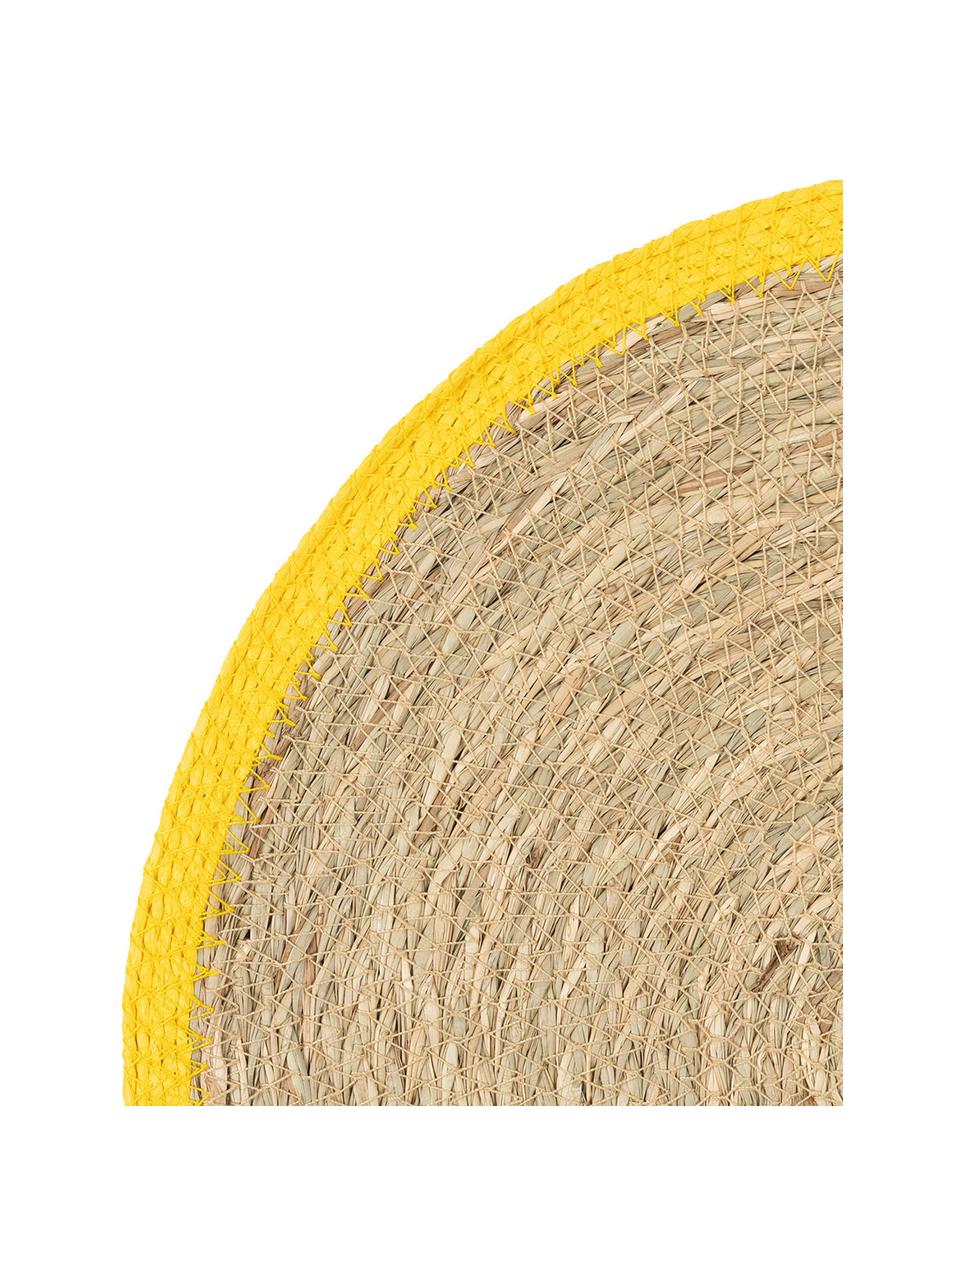 Okrągła podkładka z trawy morskiej Boho, 2 szt., Trawa morska, Beżowy, żółty, Ø 35 cm